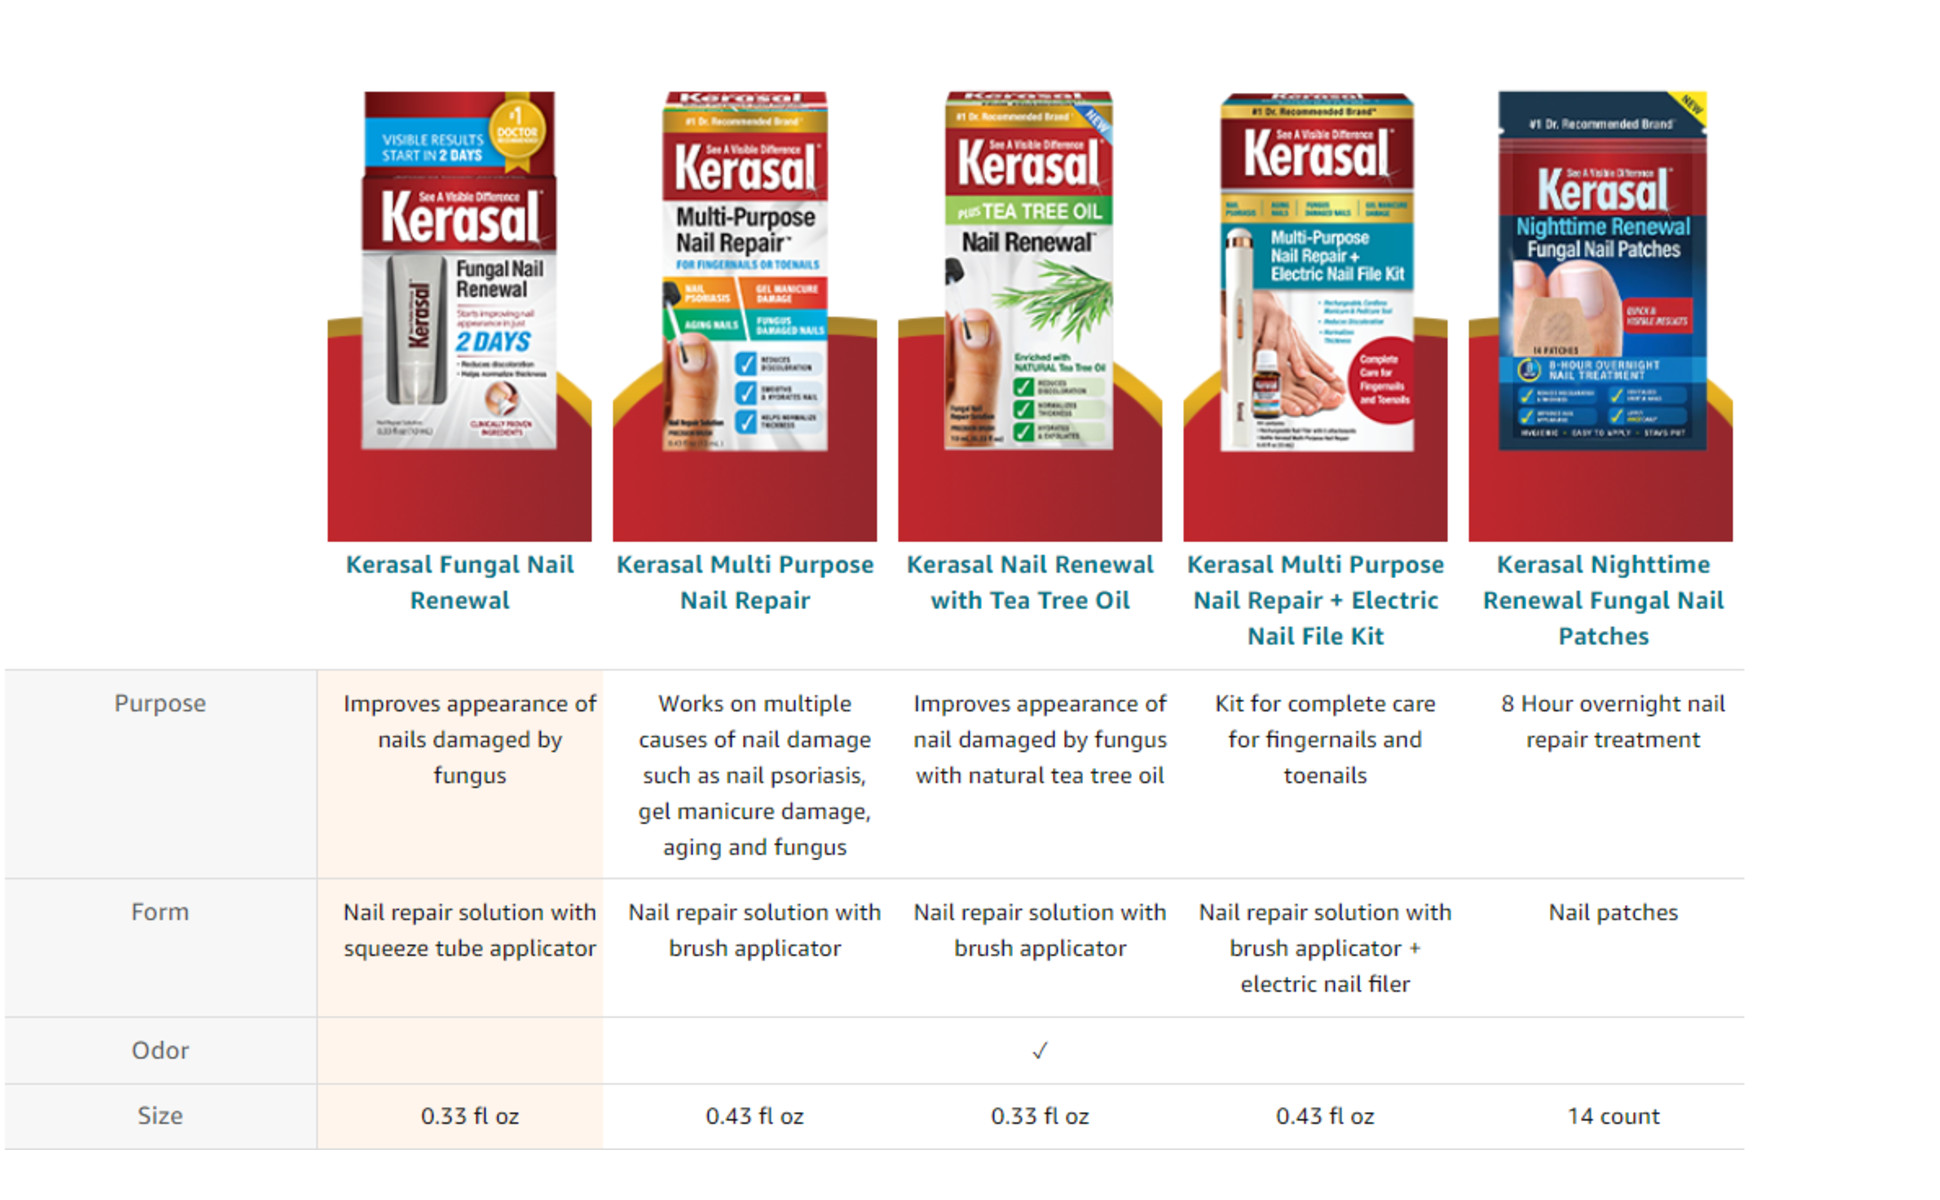 Kerasal Nail Fungal Nail Renewal Treatment, 10ml Ingredients and Reviews